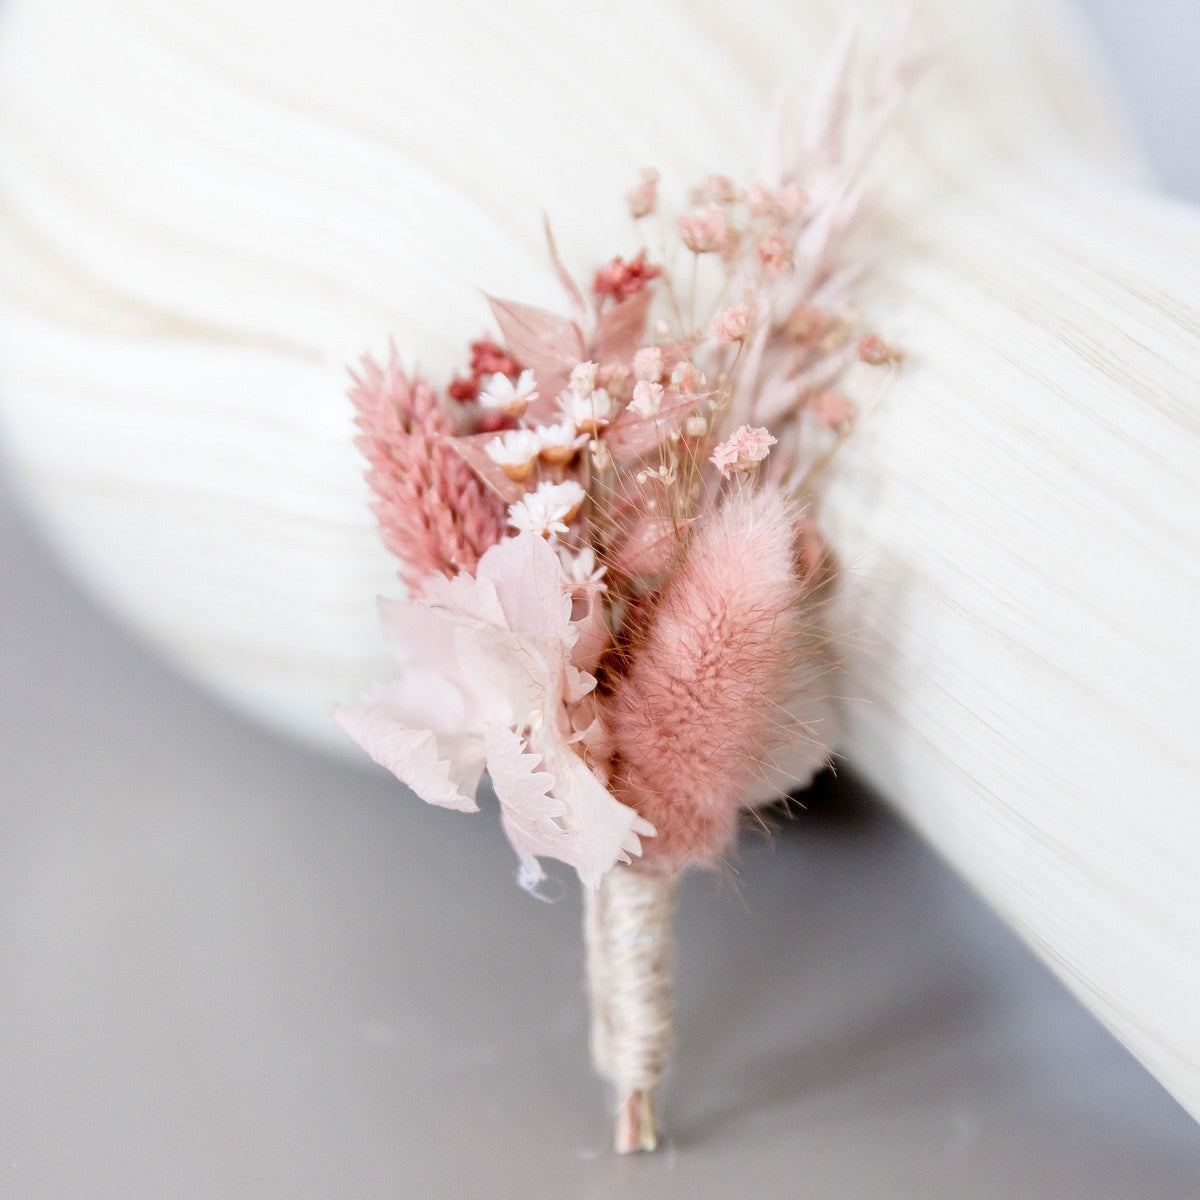 Anstecker Trockenblumen in zartem Rosa-Beige |Bräutigam, Trauzeuge